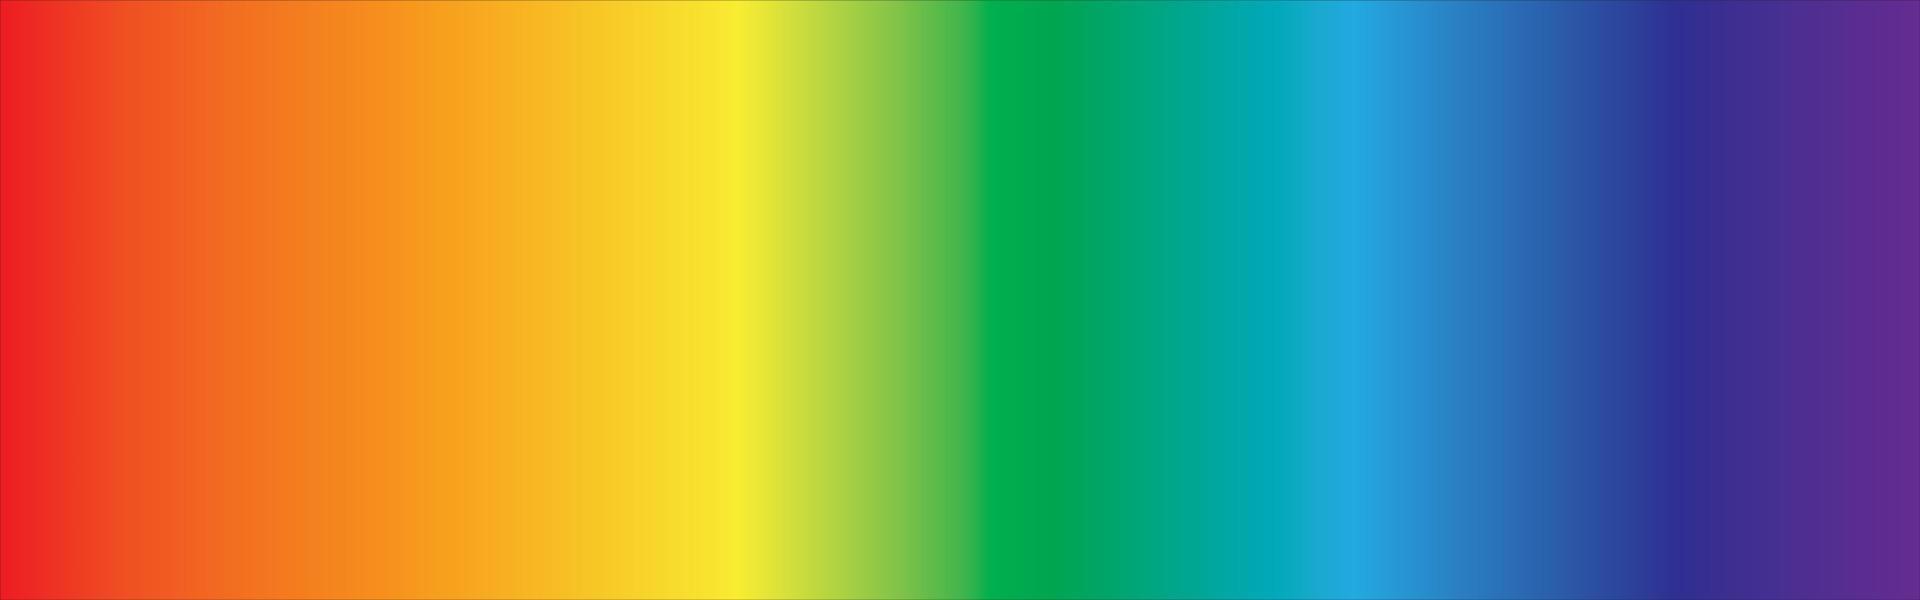 Regenbogen abstrakter Hintergrund mit Farbverlauf in Panoramaansicht vektor